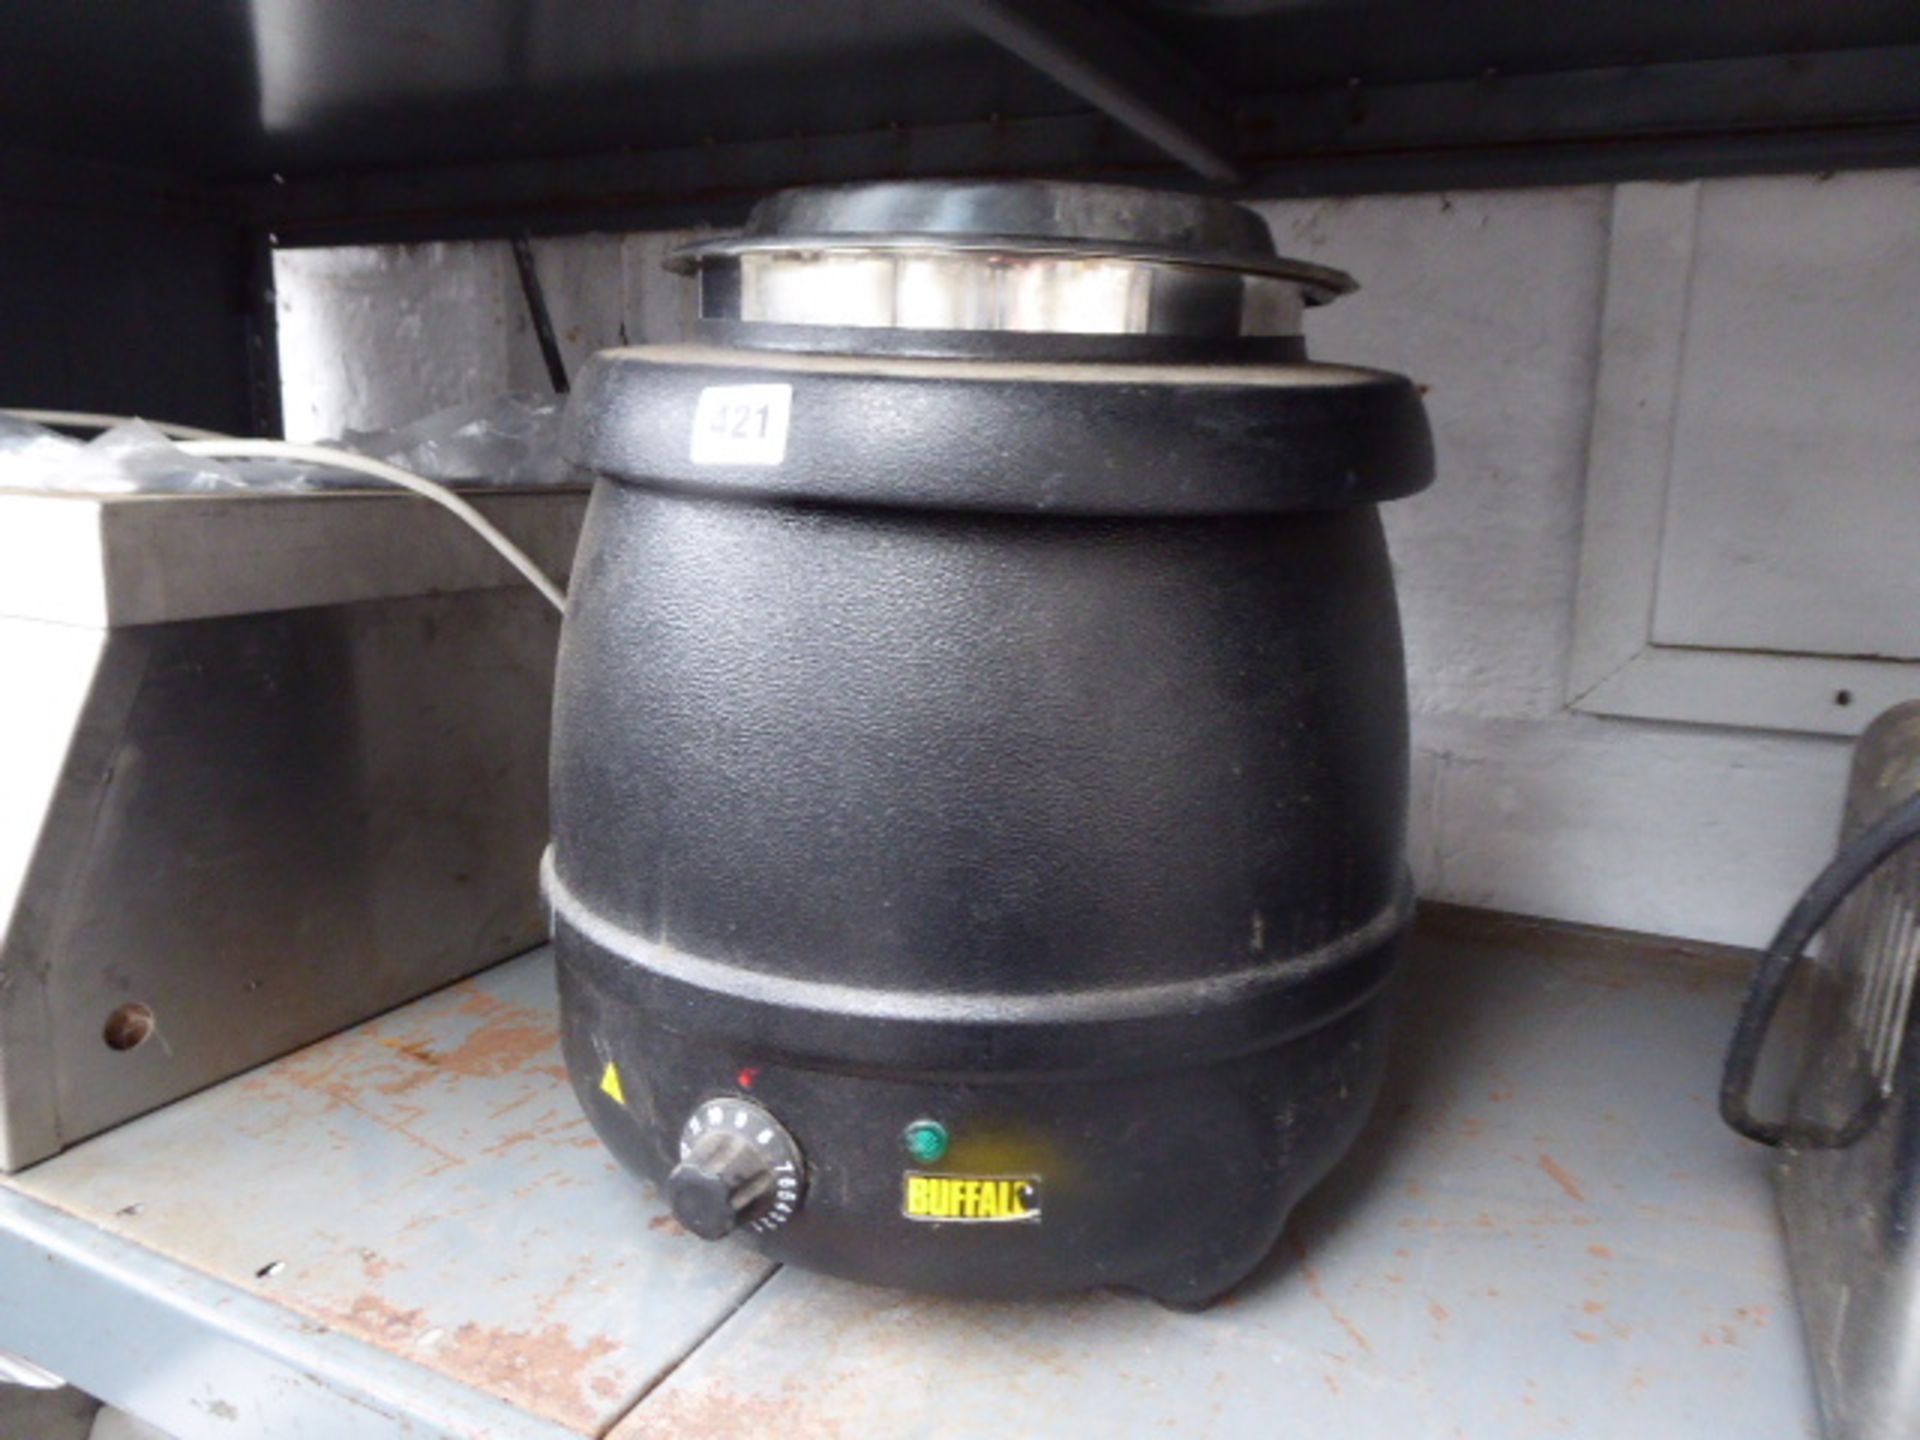 (91) Buffalo soup kettle